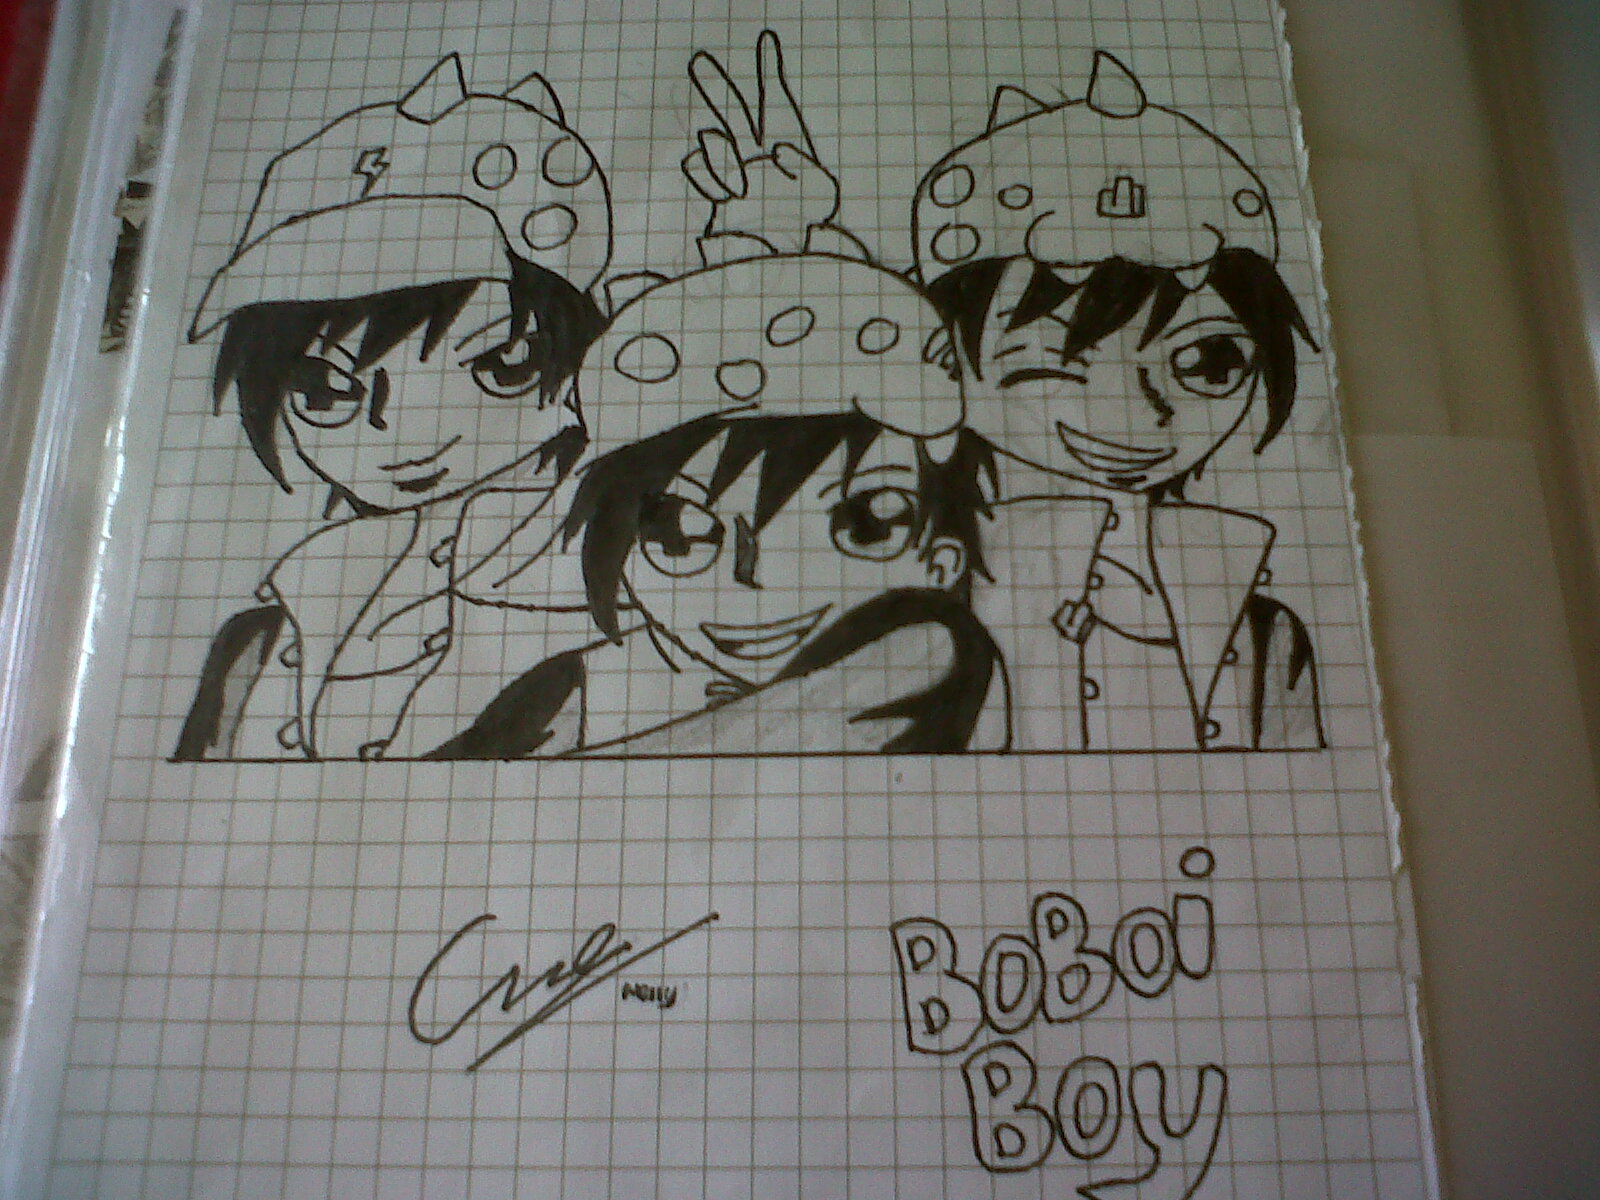 BoBoiBoy fan art by me